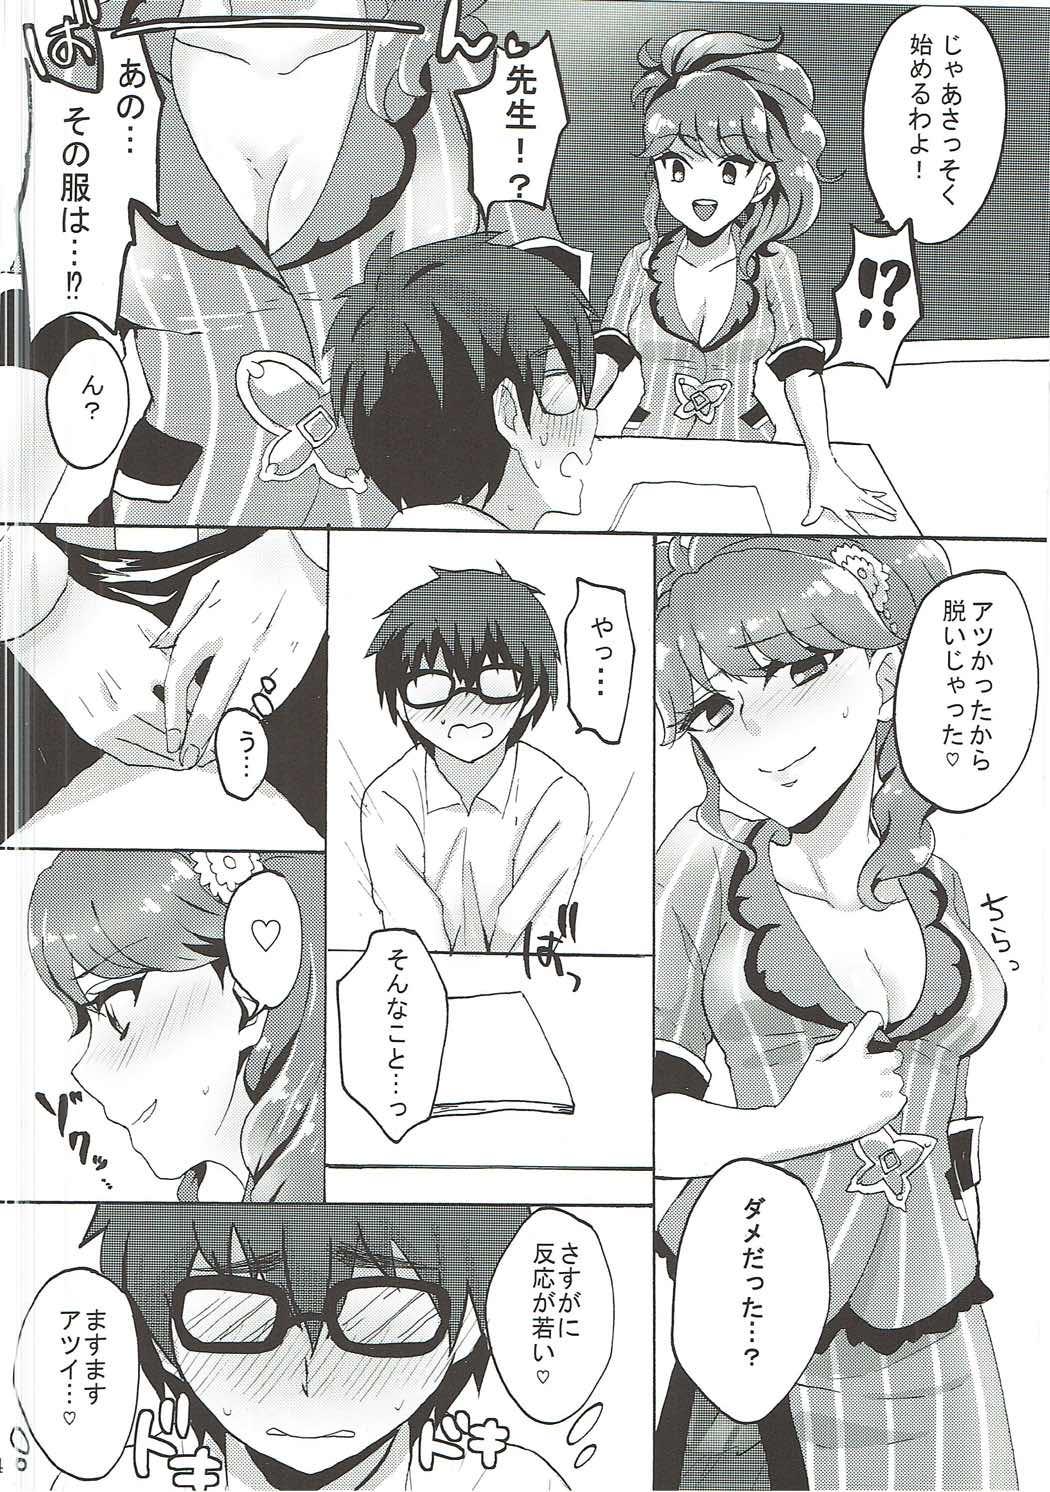 Gaydudes Oshiete! Aikatsu Sensei - Aikatsu Groupsex - Page 5